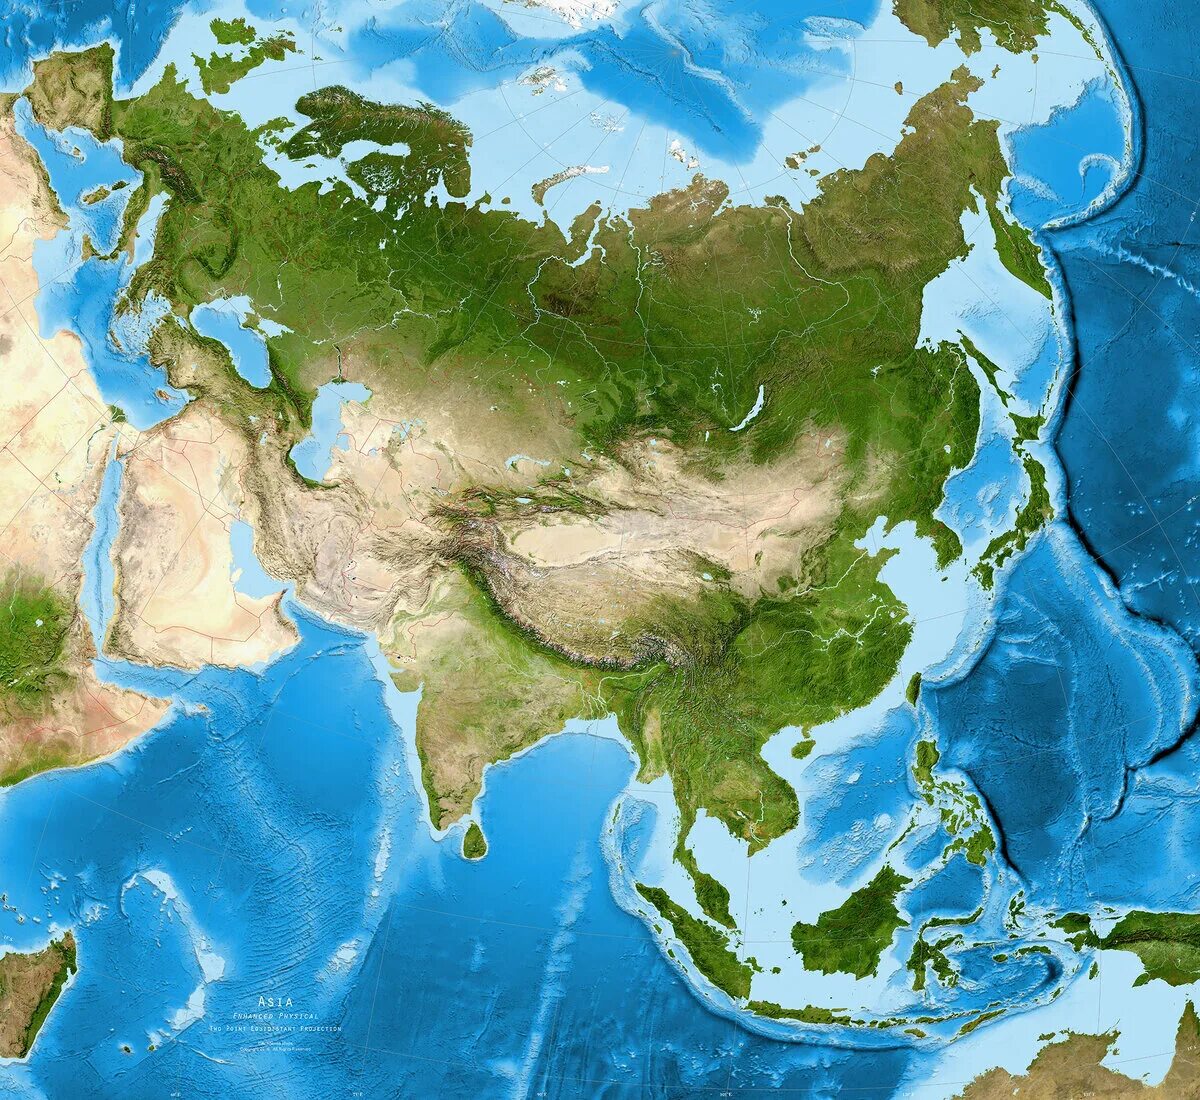 Сделано в евразии. Материк Евразия. Спутниковый снимок Евразии. Материк Азия материк Евразия. Континент Евразия.